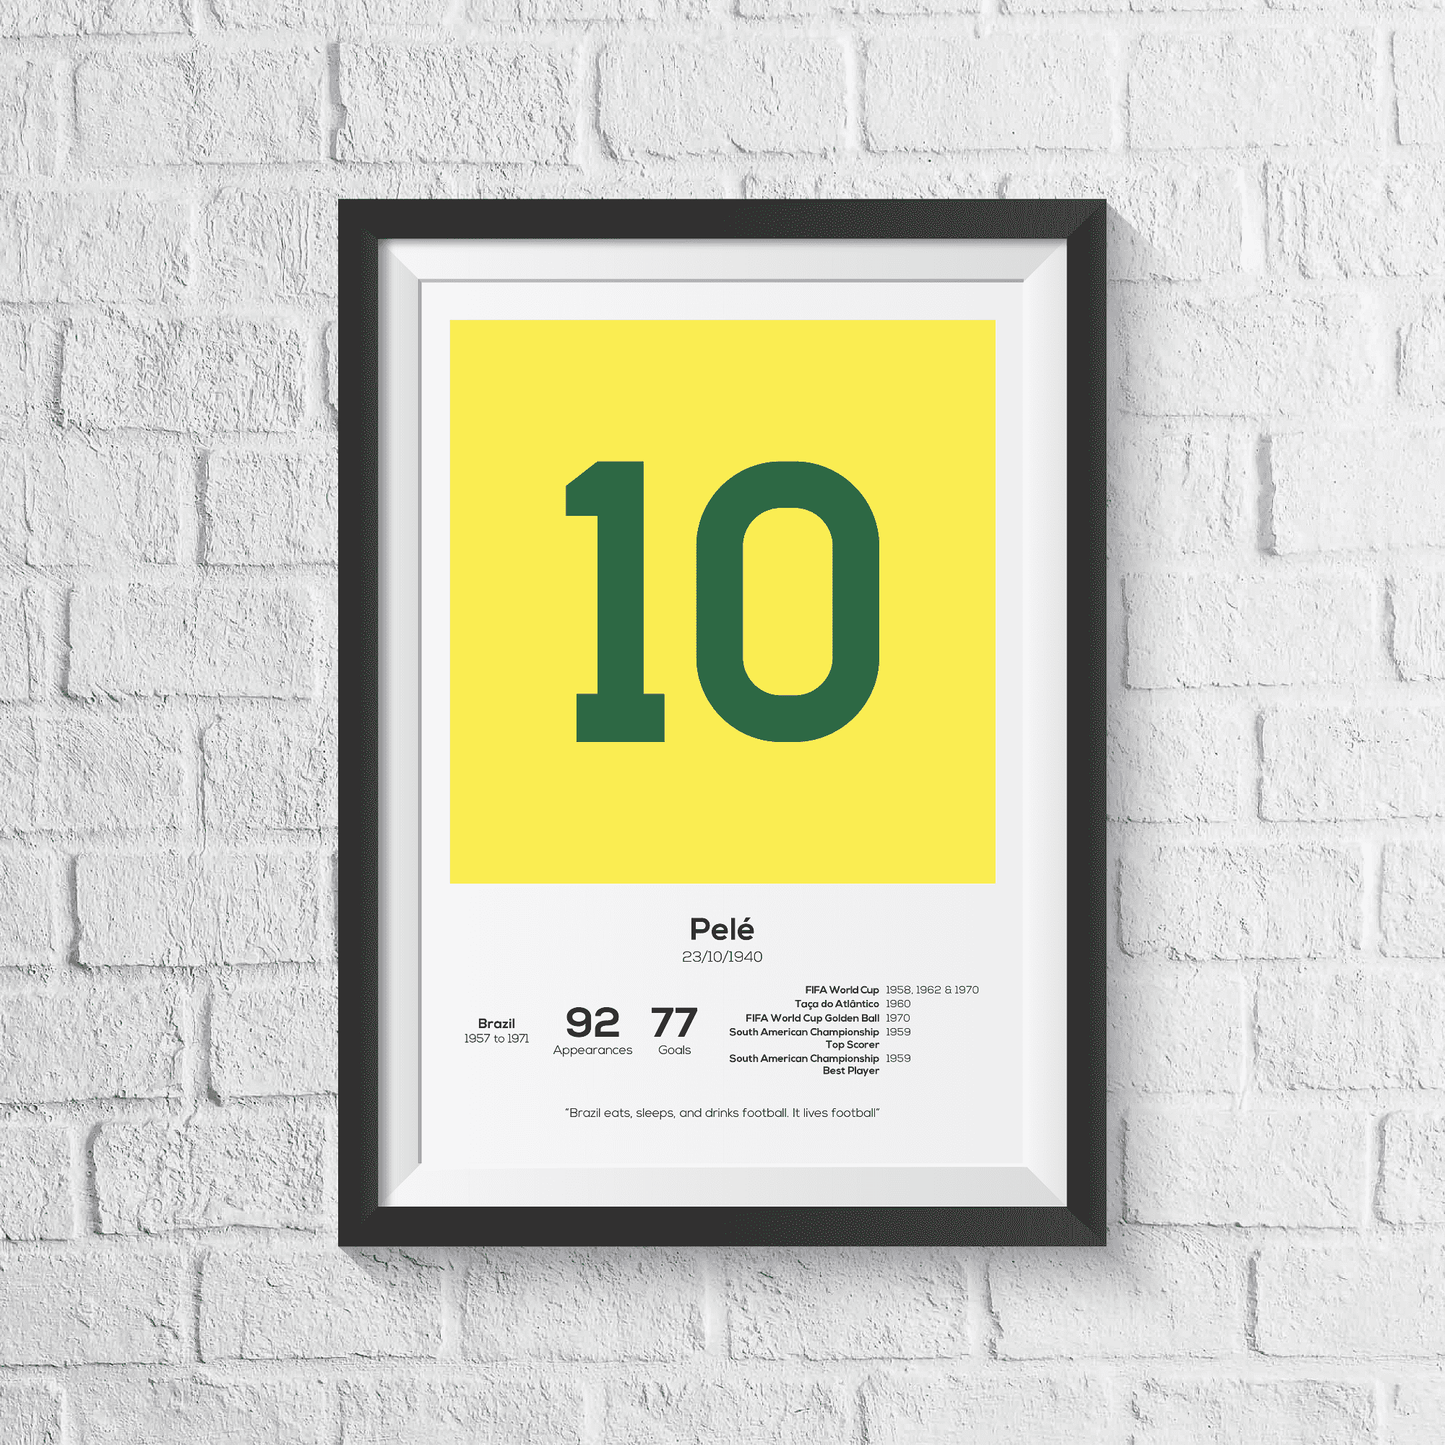 Pele Brazil Legend Stats Print